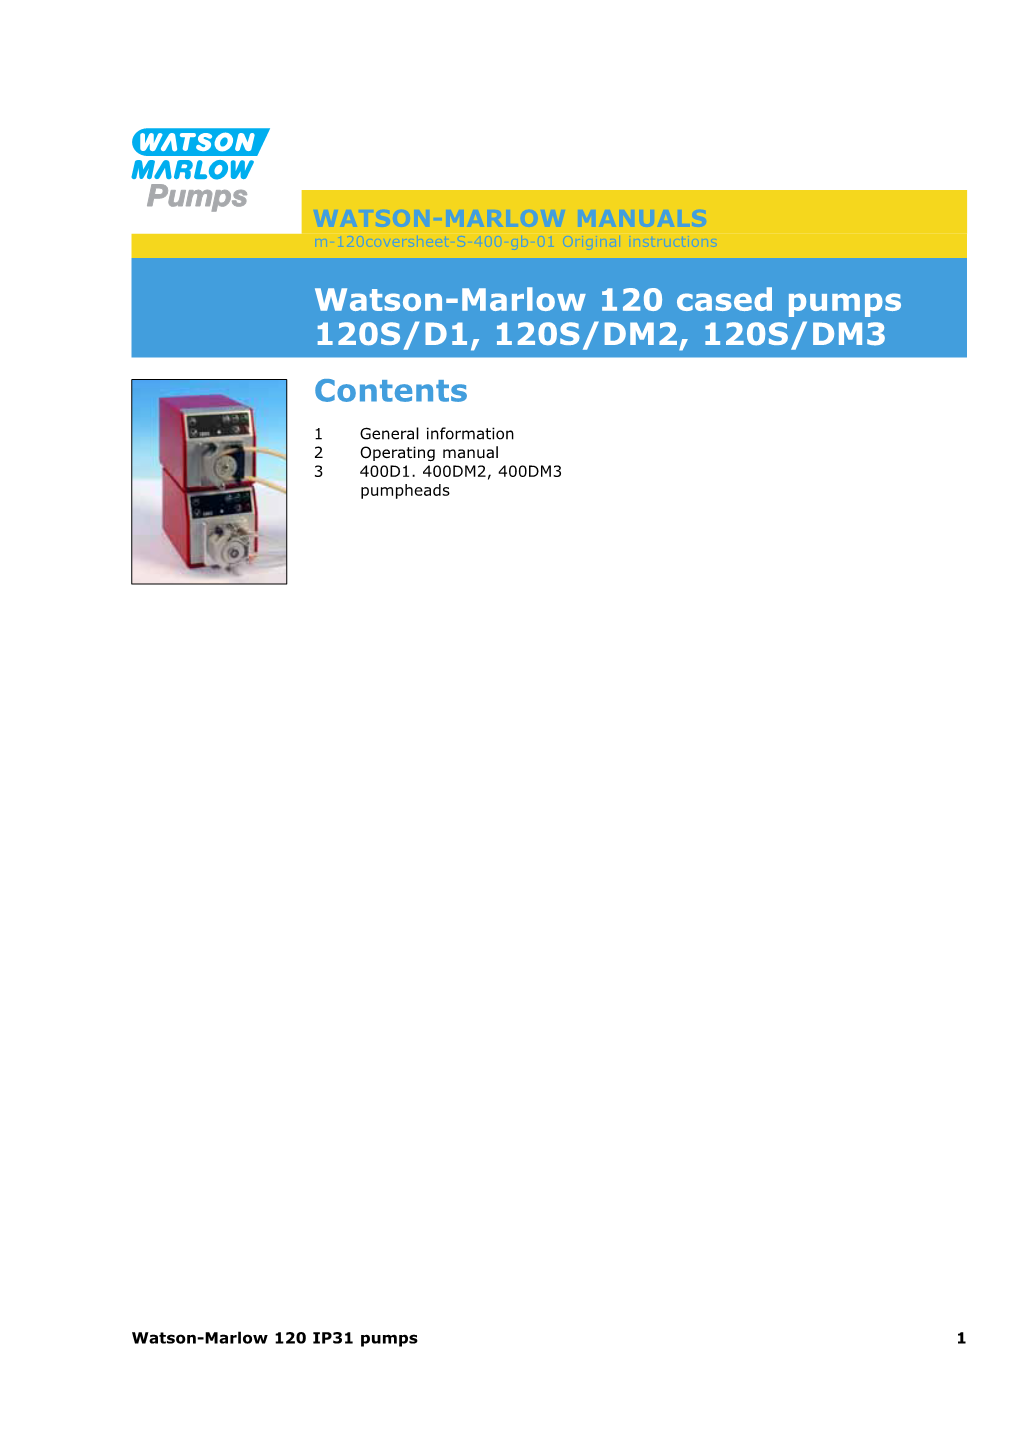 Watson-Marlow 120 Cased Pumps 120S/D1, 120S/DM2, 120S/DM3 Contents